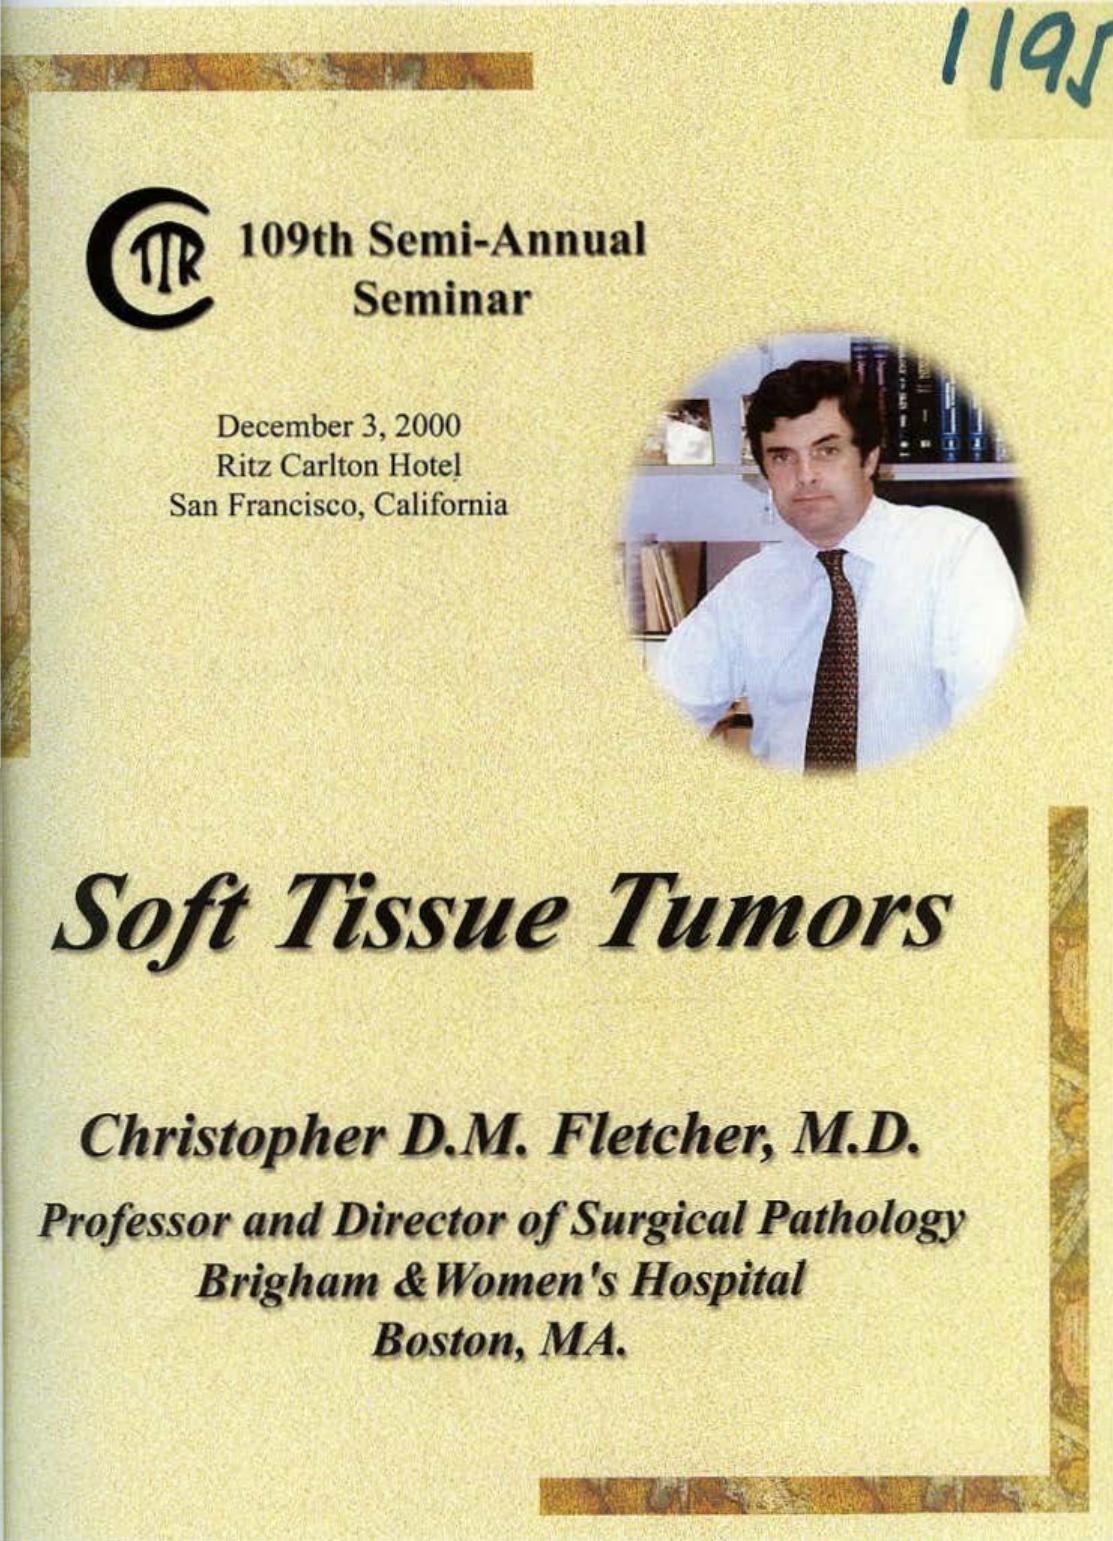 Soft Tissue Tumors 2000